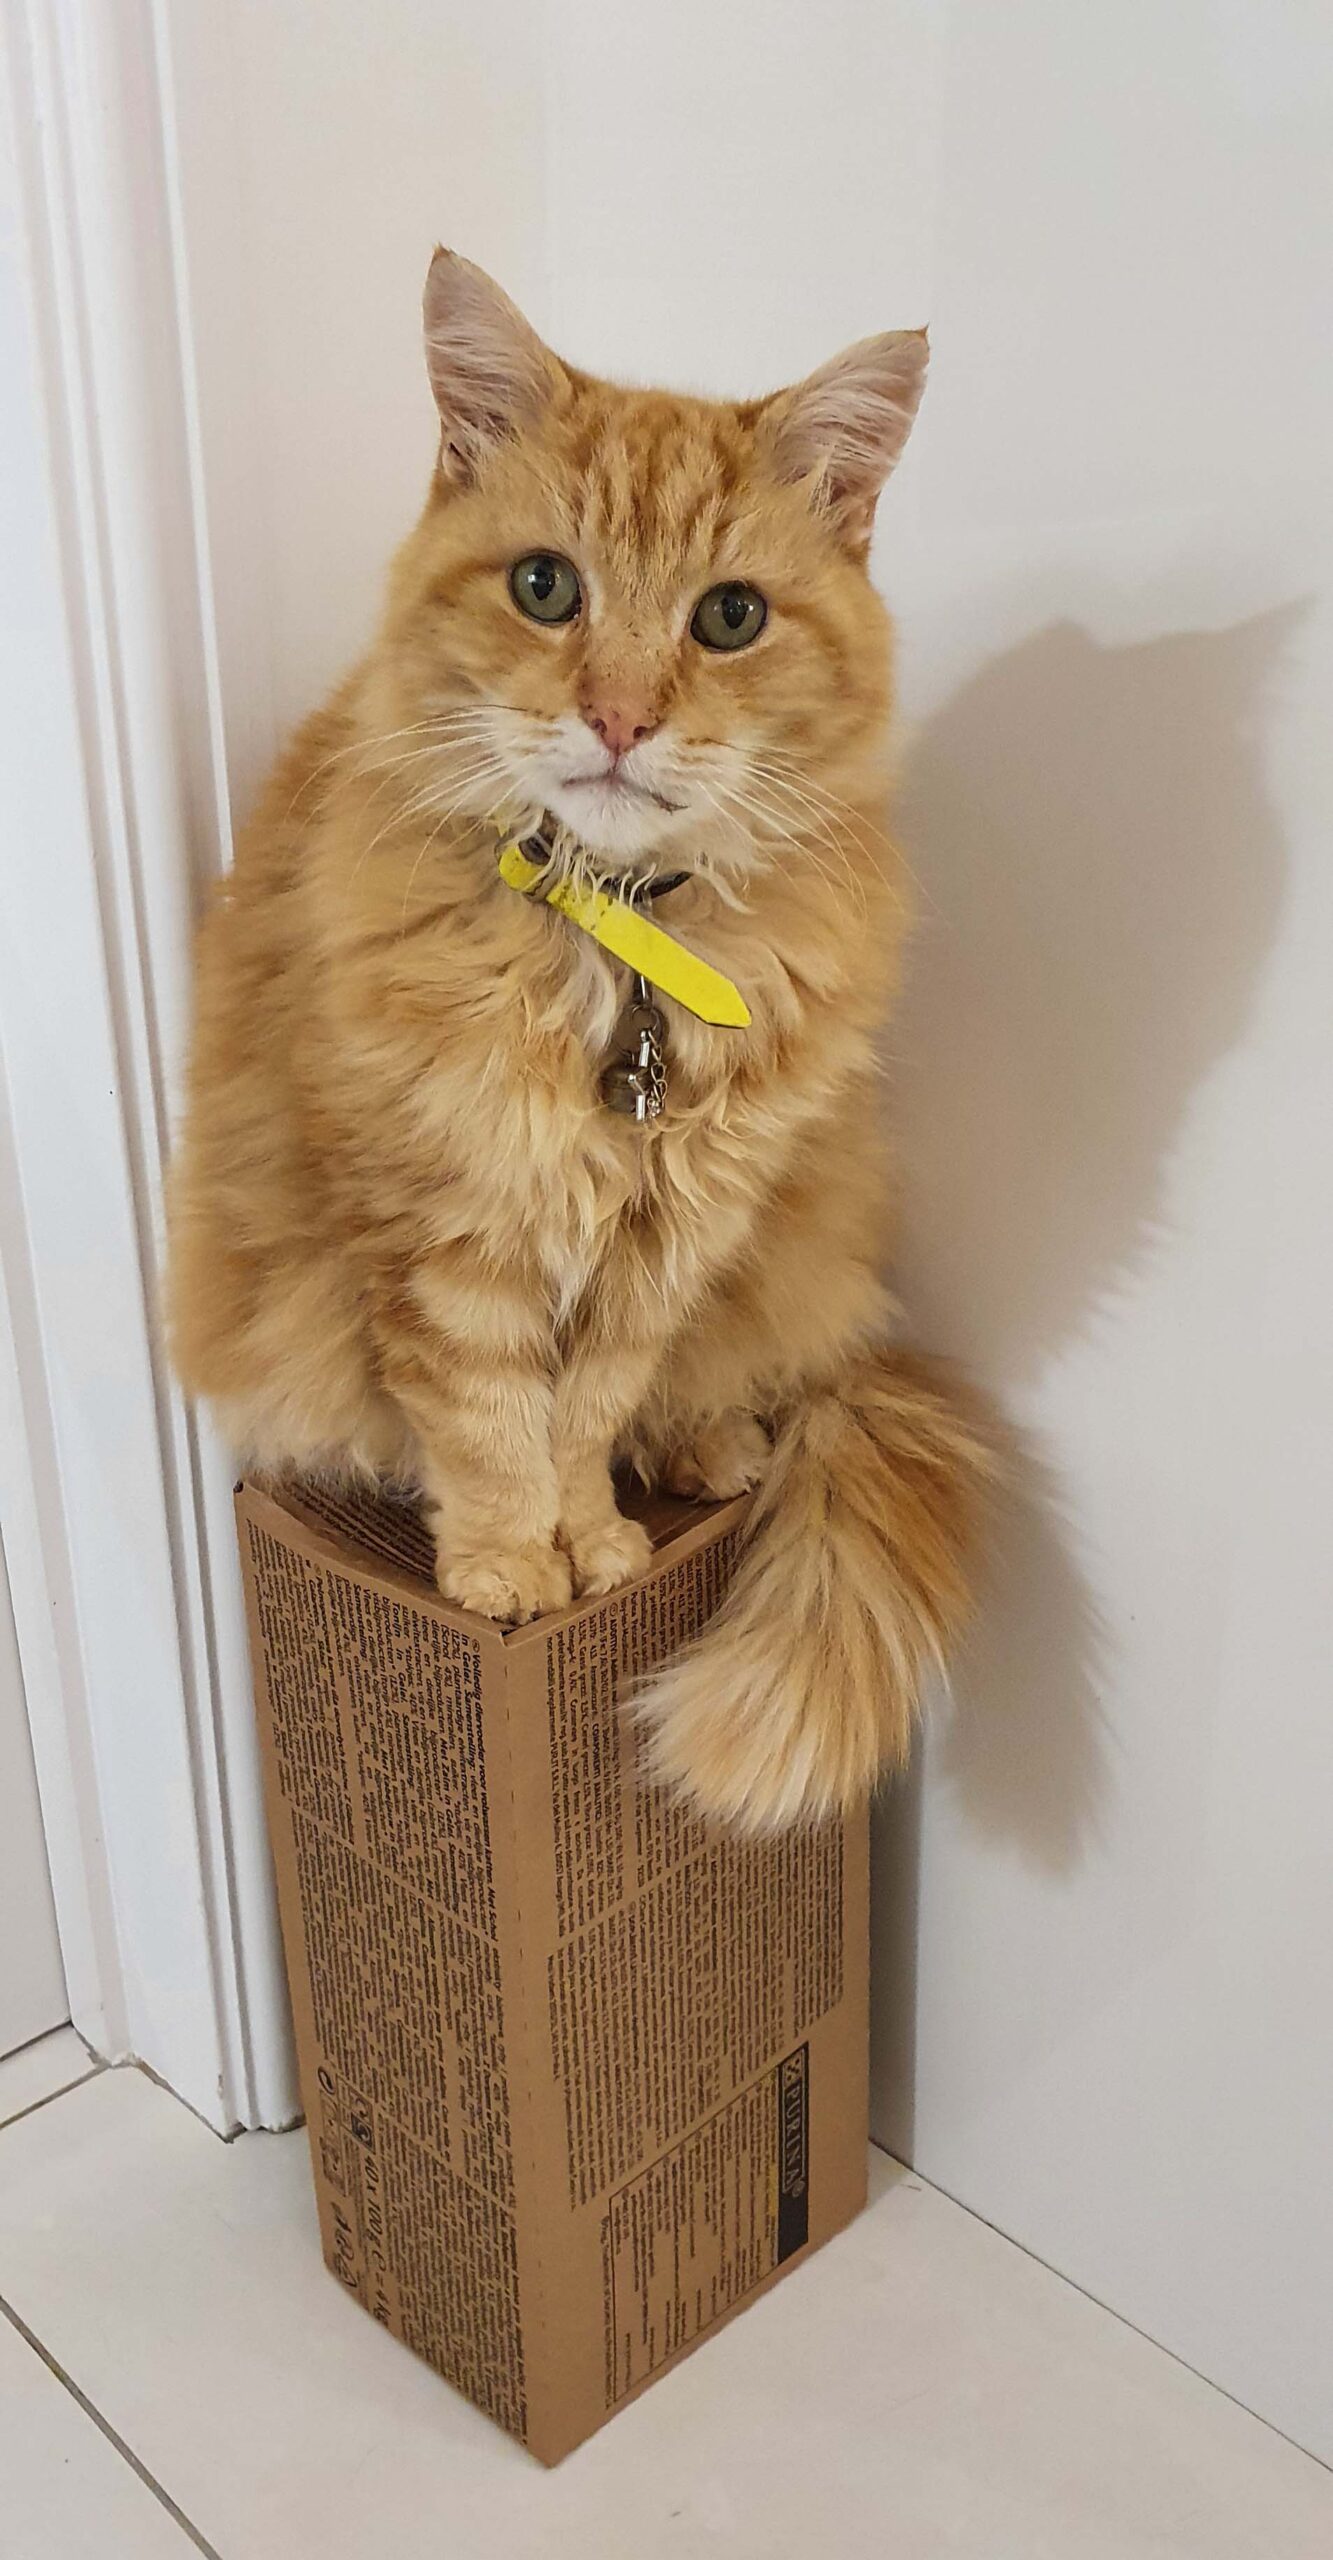 Denis Cat on his box